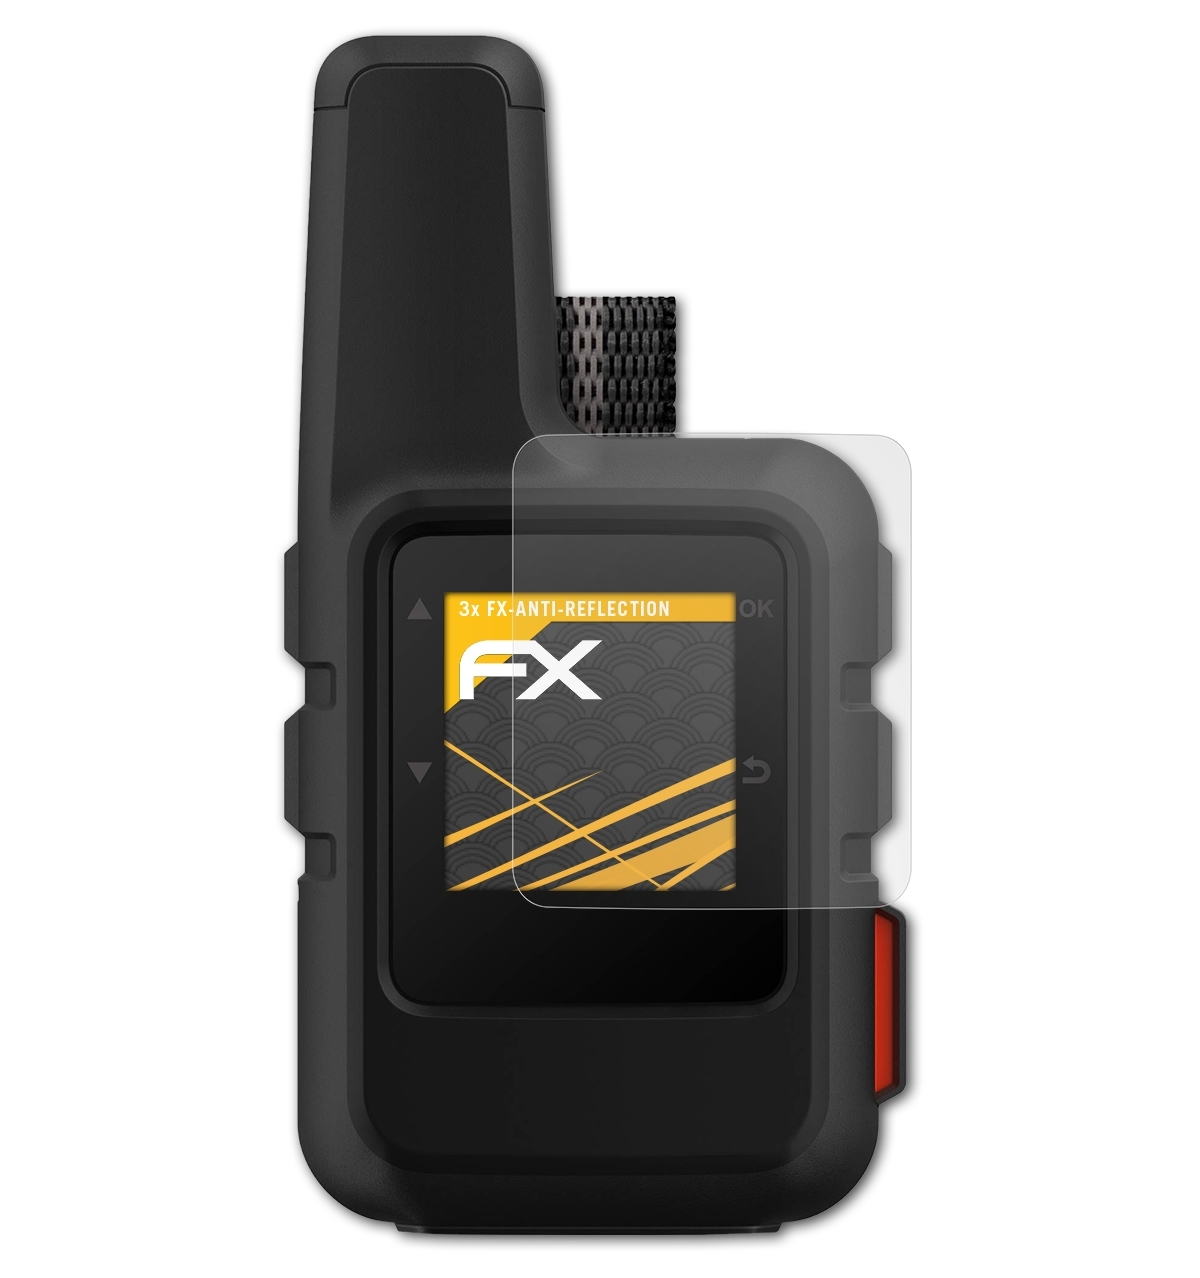 Mini) inReach ATFOLIX FX-Antireflex Garmin Displayschutz(für 3x